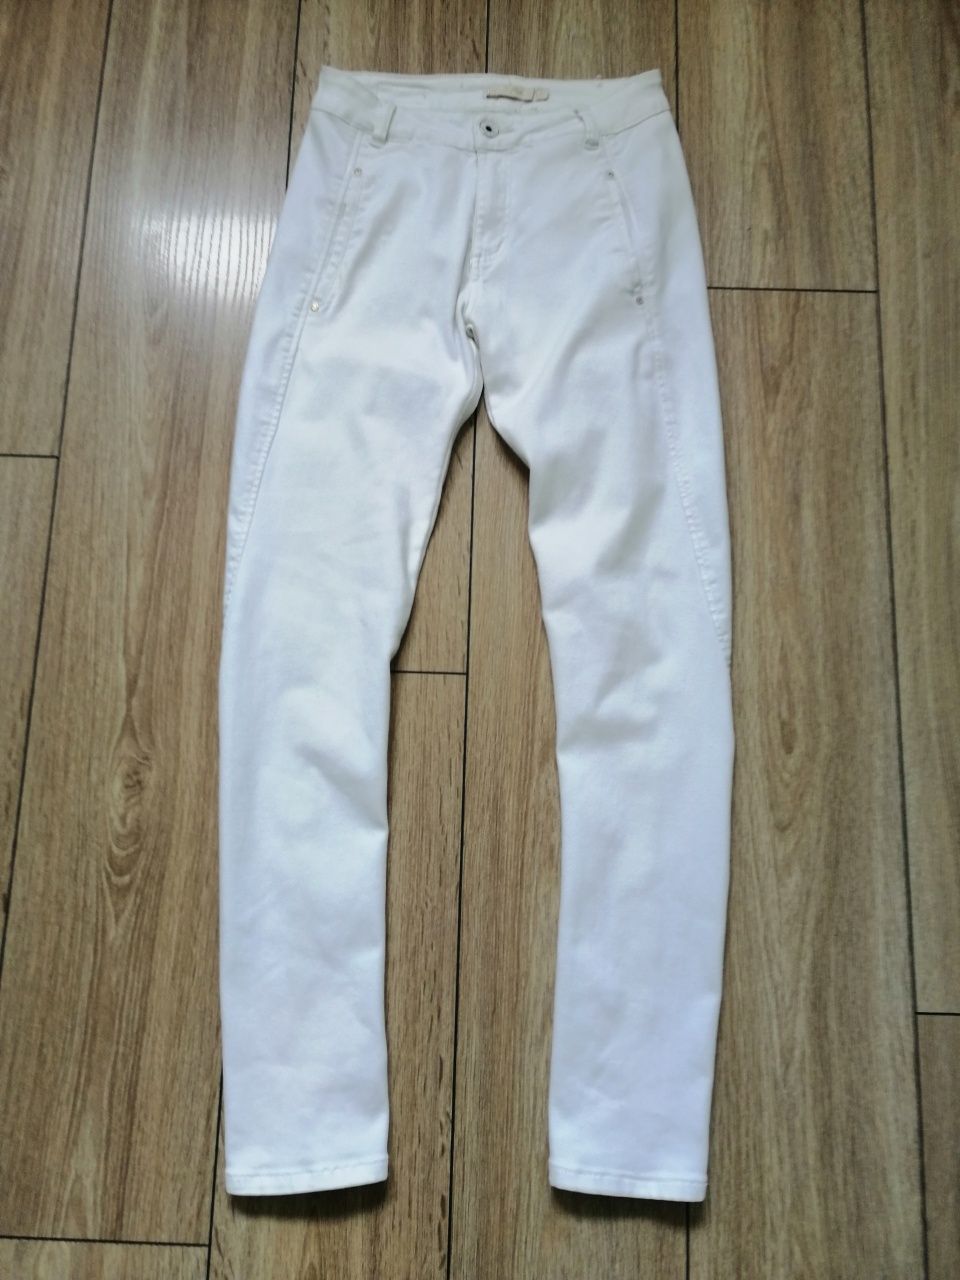 Spodnie białe jeans cotton 8 /36